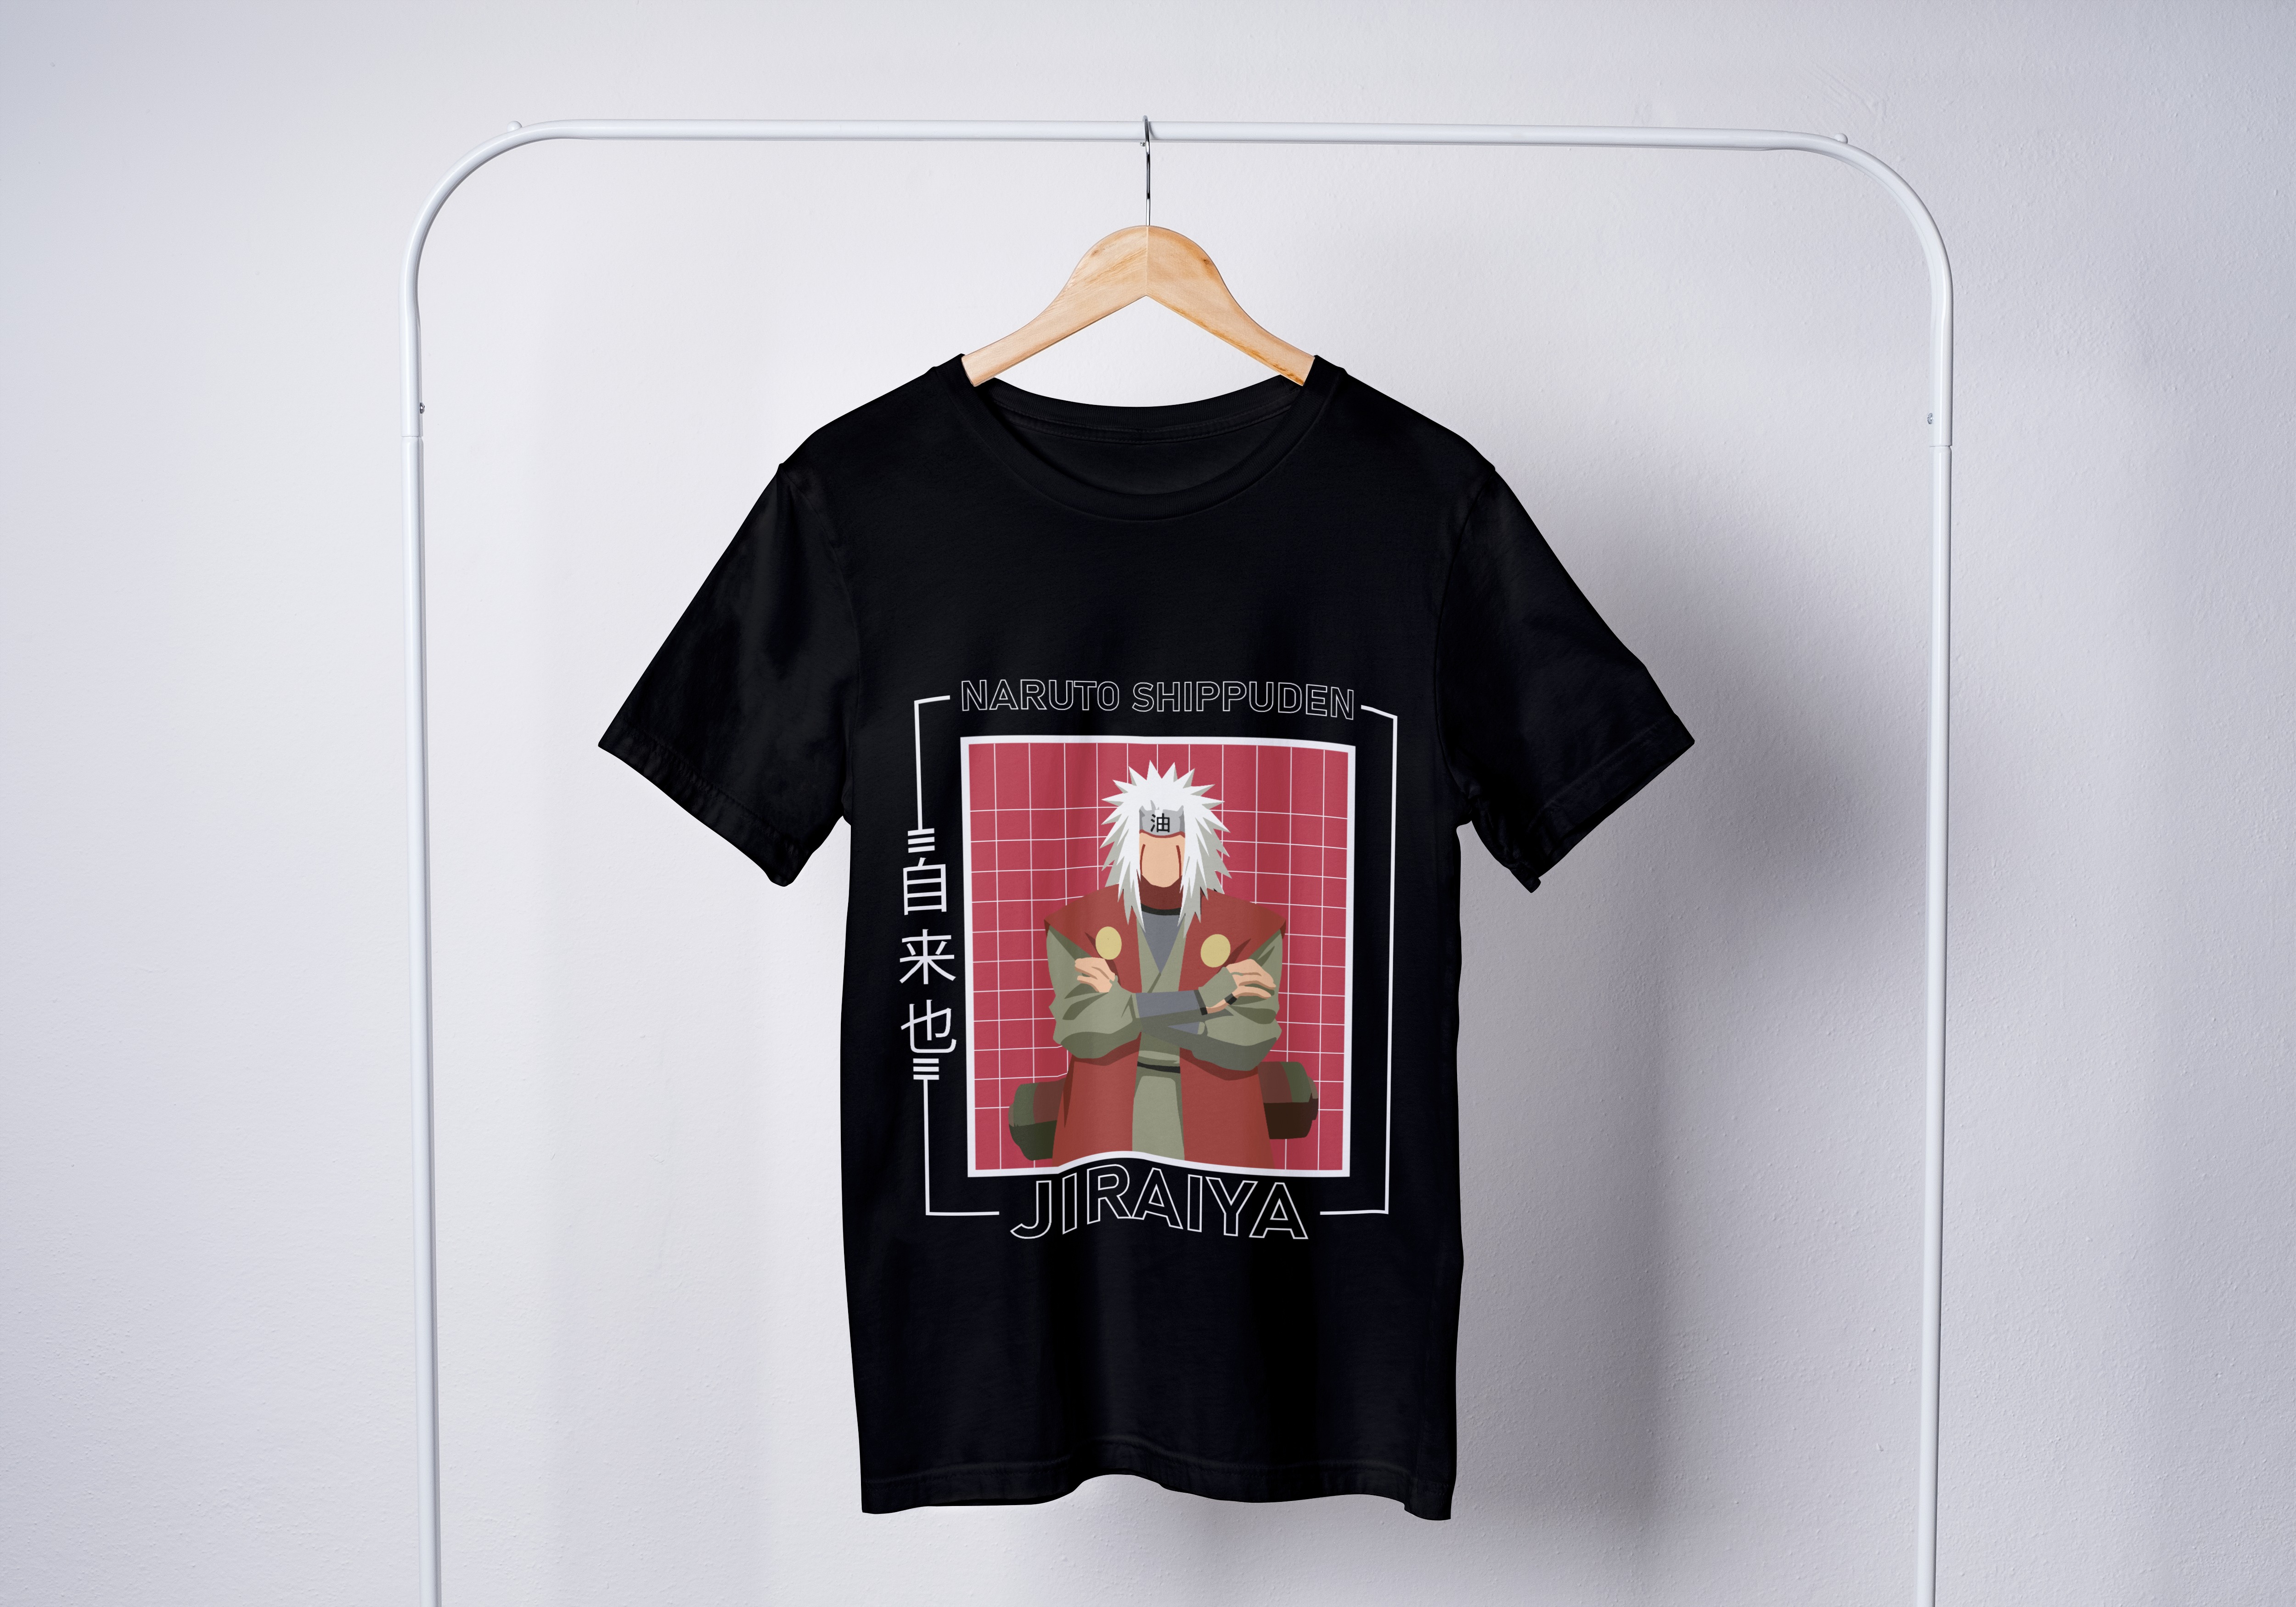 Naruto Tops - חולצה ג'יראיה - נארוטו